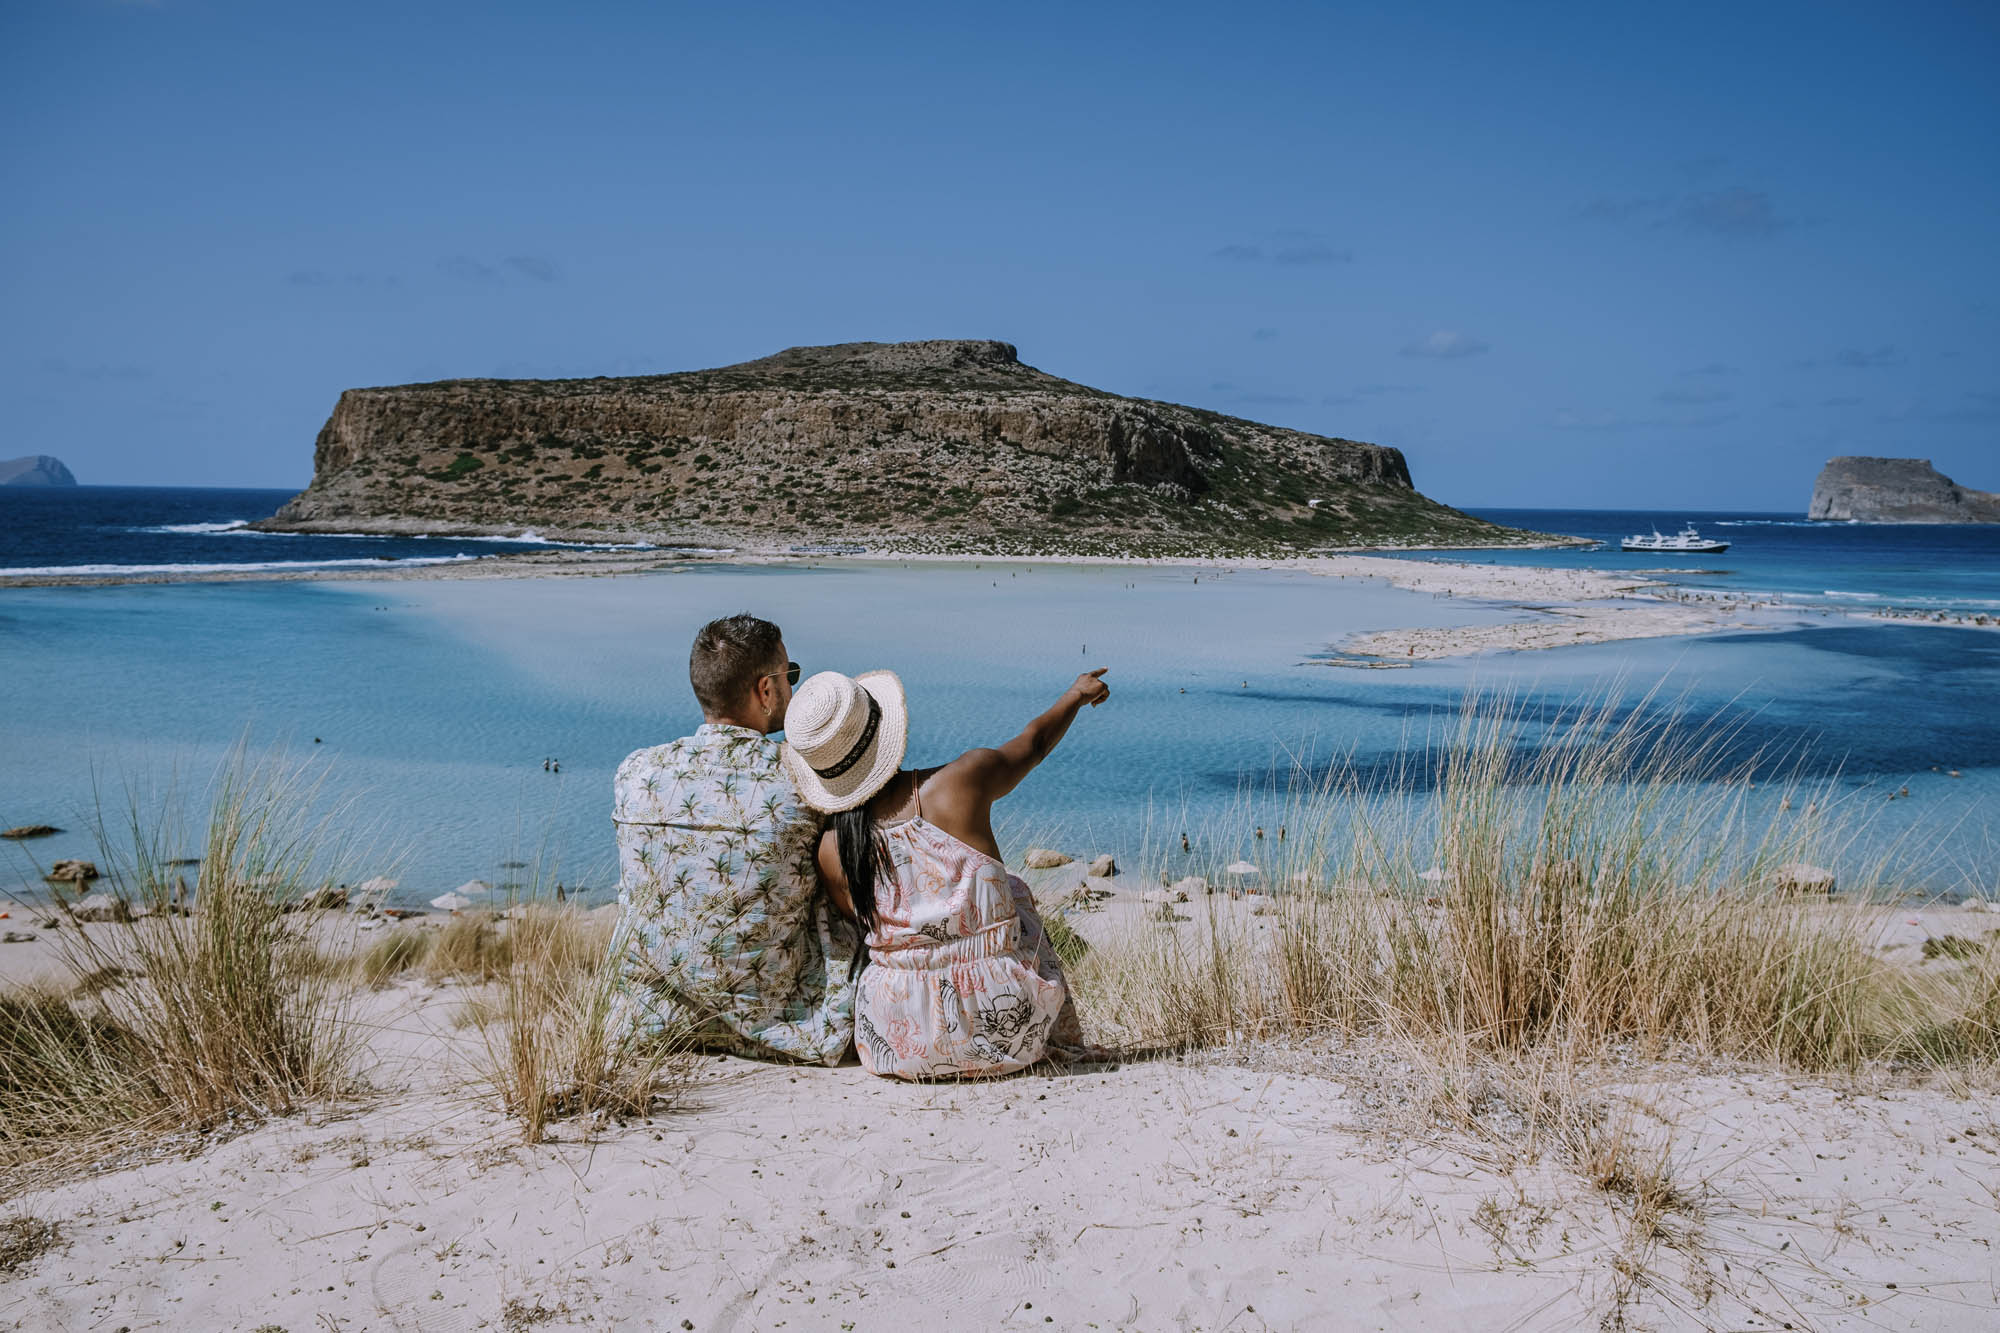 plaża balos, romantyczne ujęcie z parą siedzącą na piasku, przytuleni patrzą na morze